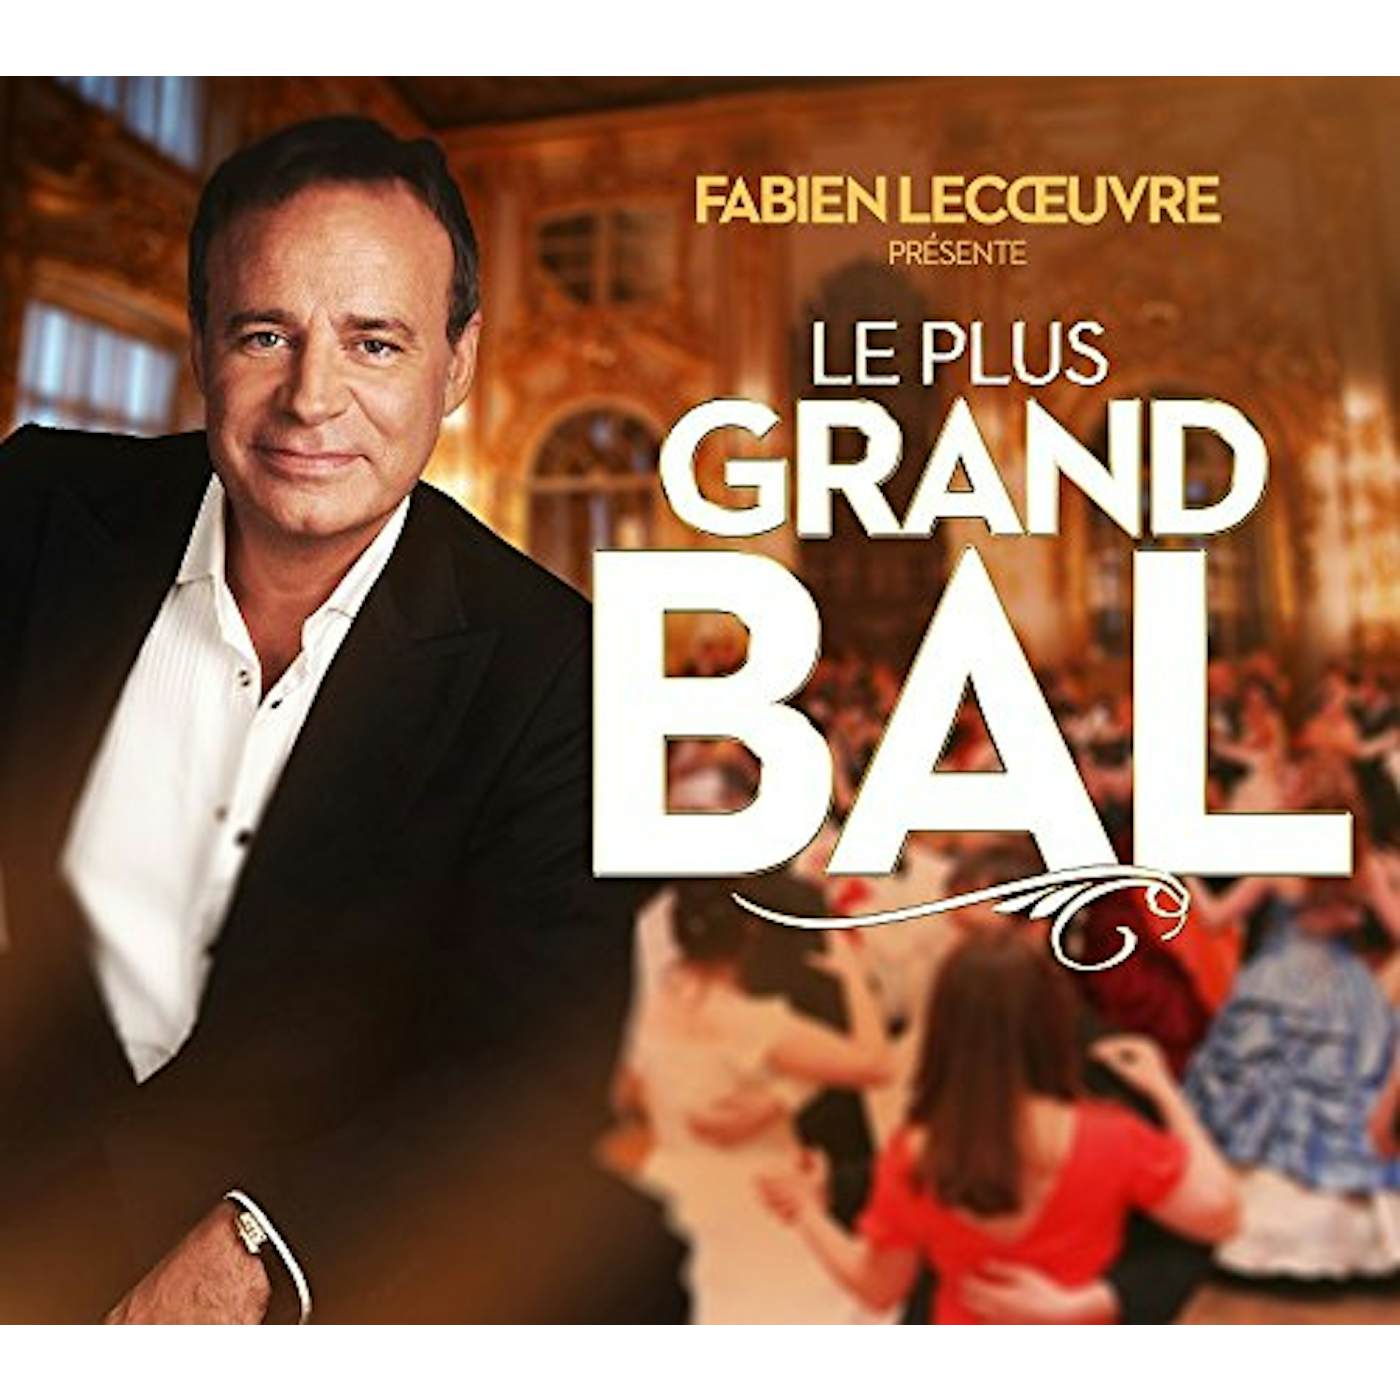 Fabien Lecoeuvre PRESENTE LE PLUS GRAND BAL DE FRANC CD